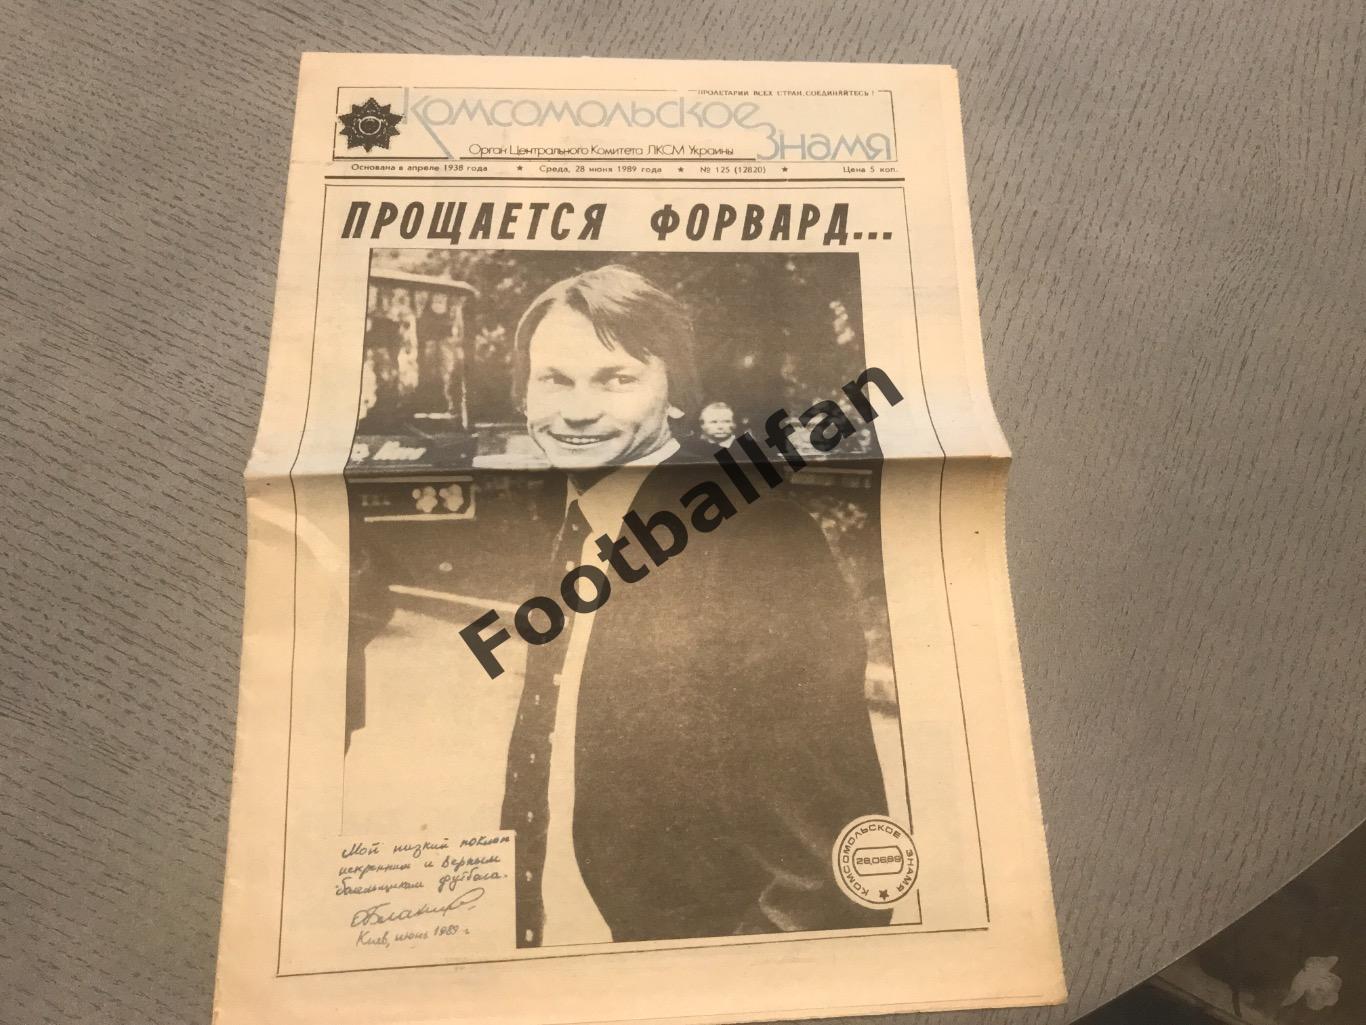 Комсомольское знамя (28.06.1989) Прощается форвард …Олег Блохин